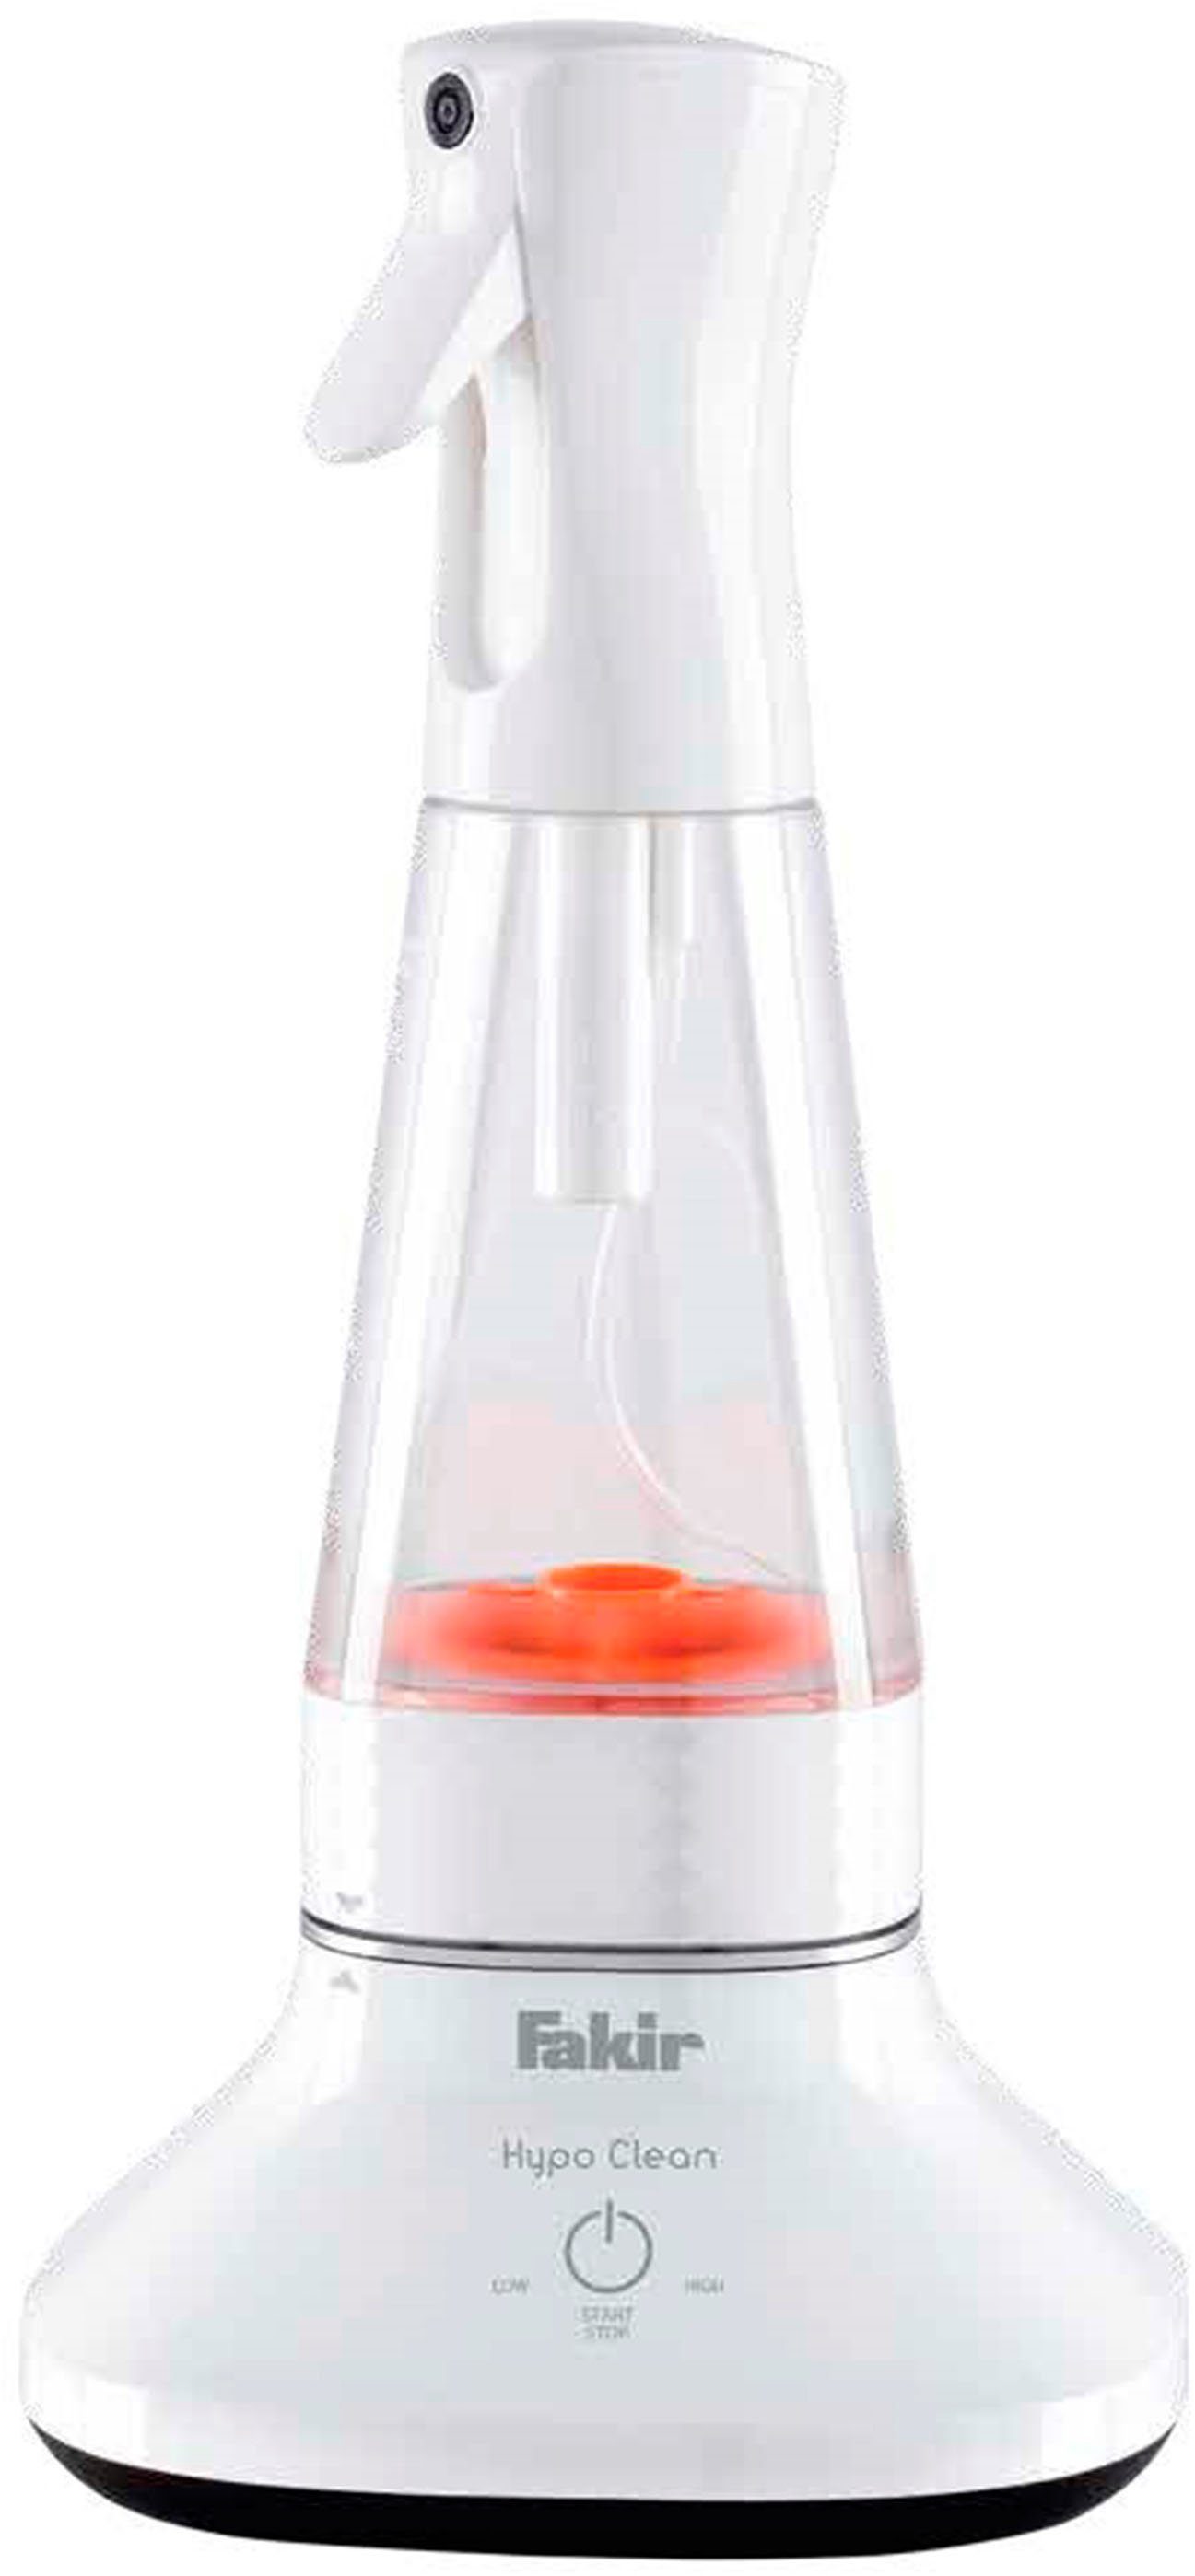 FAKIR Wassersterilisiergerät Hypo Clean, großes ml) (400 Fassungsvermögen